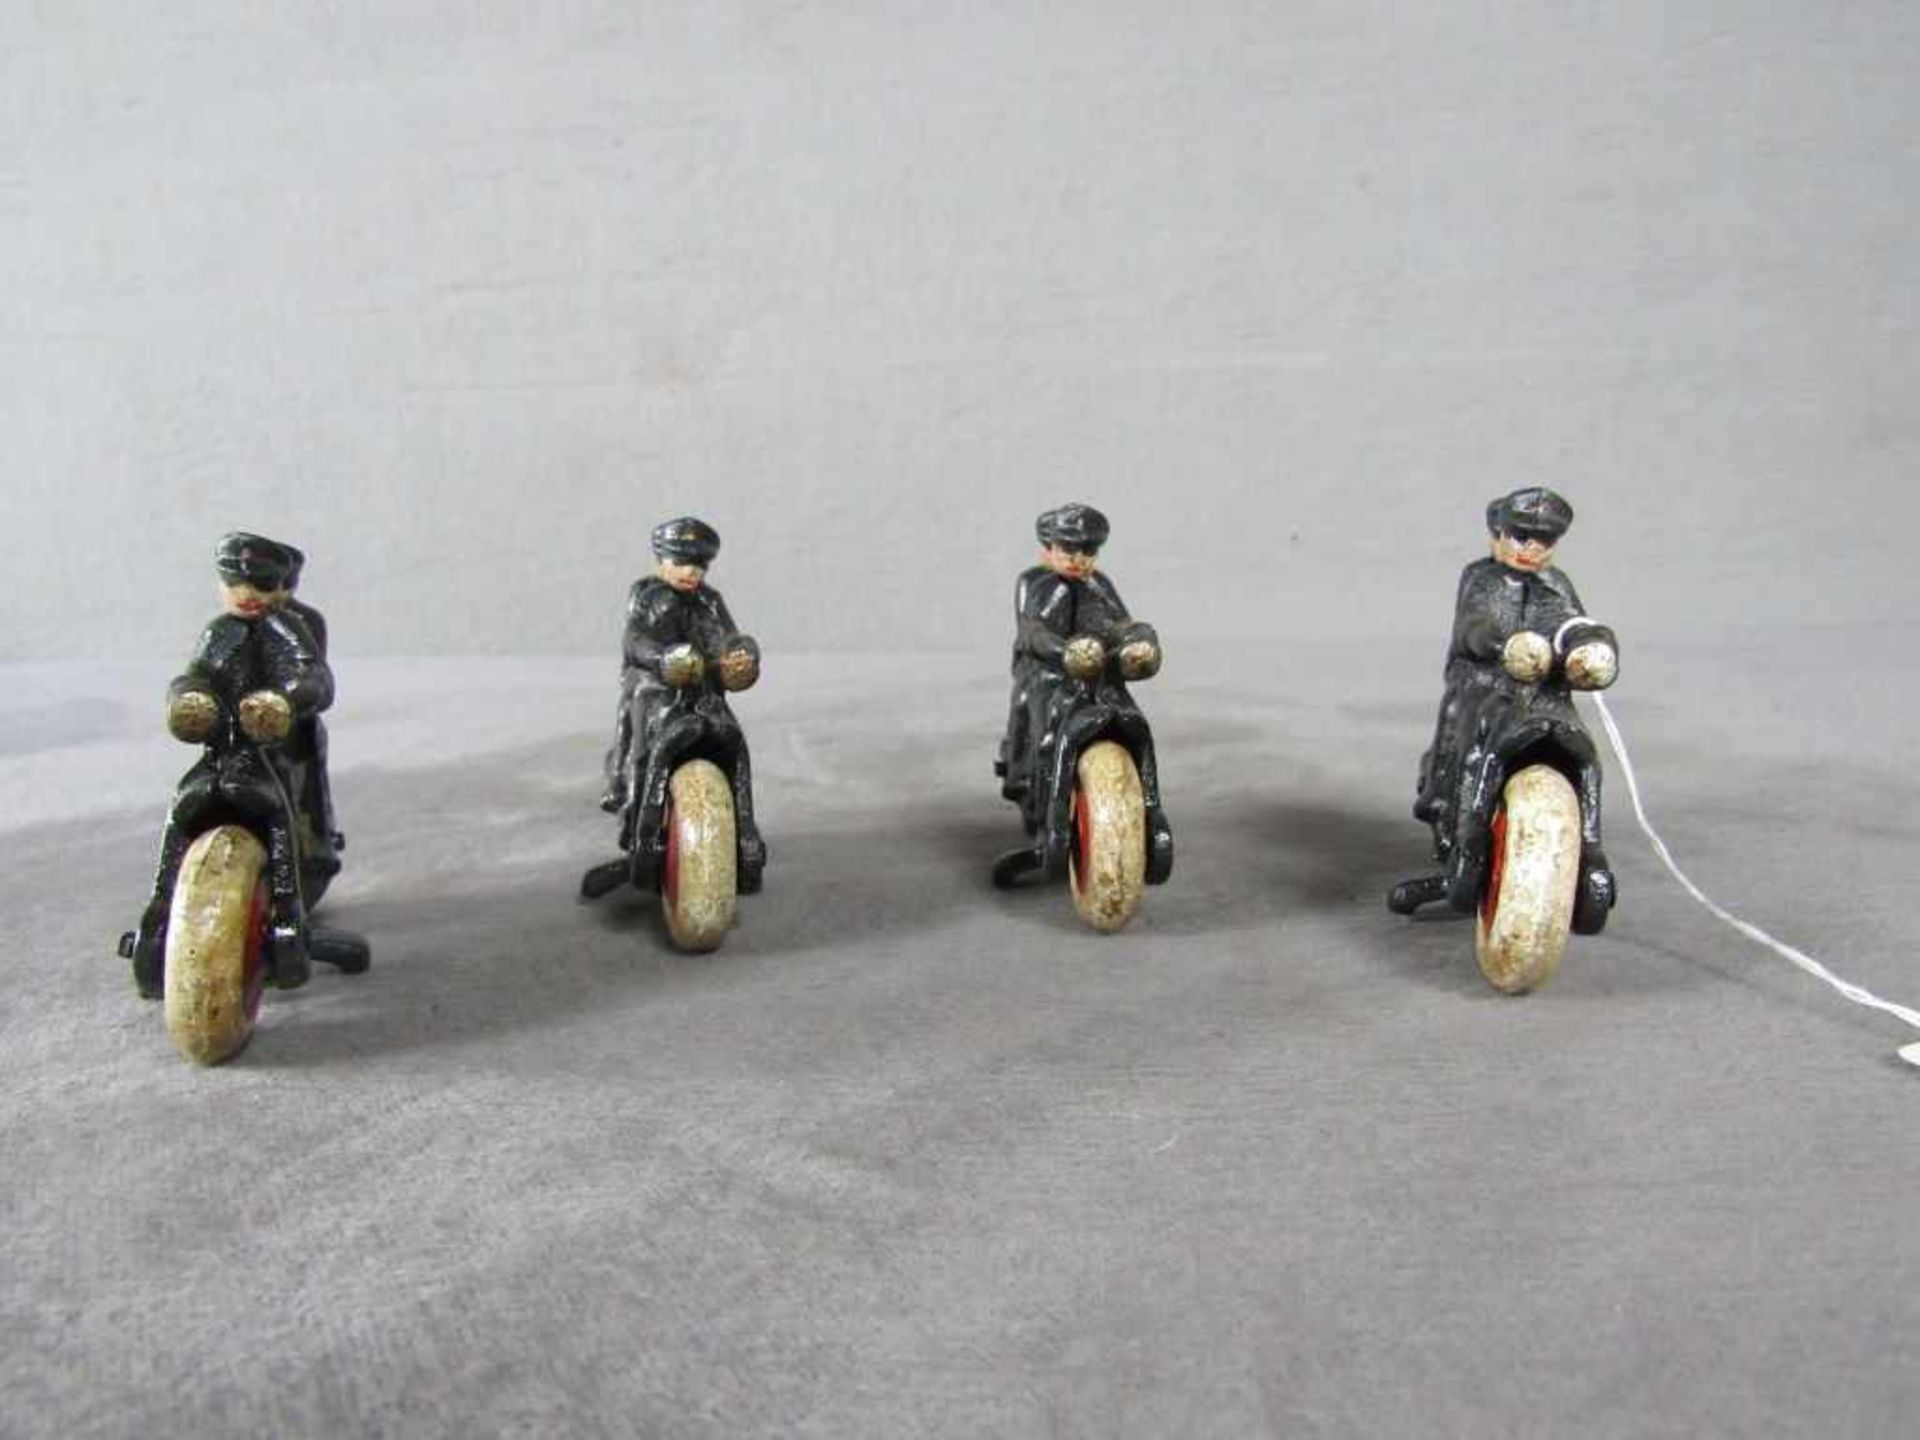 Konv. 4 gusseisernen Spielzeug Motorräder, Polizei auf Harley Davidson L:10cm, rollbar - Image 2 of 2